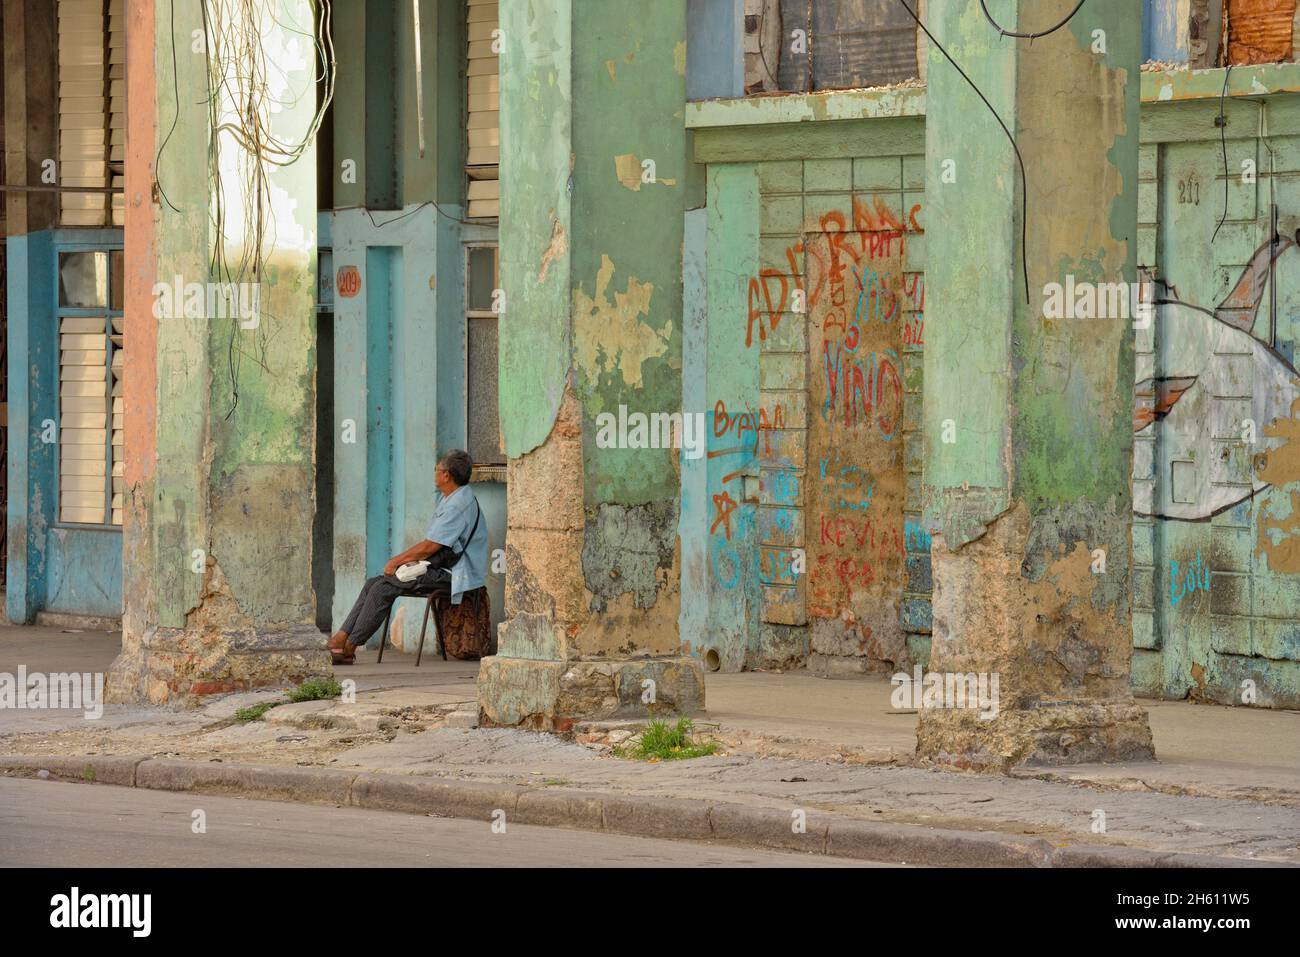 Scena stradale nel centro di l'Avana. Architettura coloniale sbriciolante con uomo seduto, la Habana (l'Avana), Habana, Cuba Foto Stock